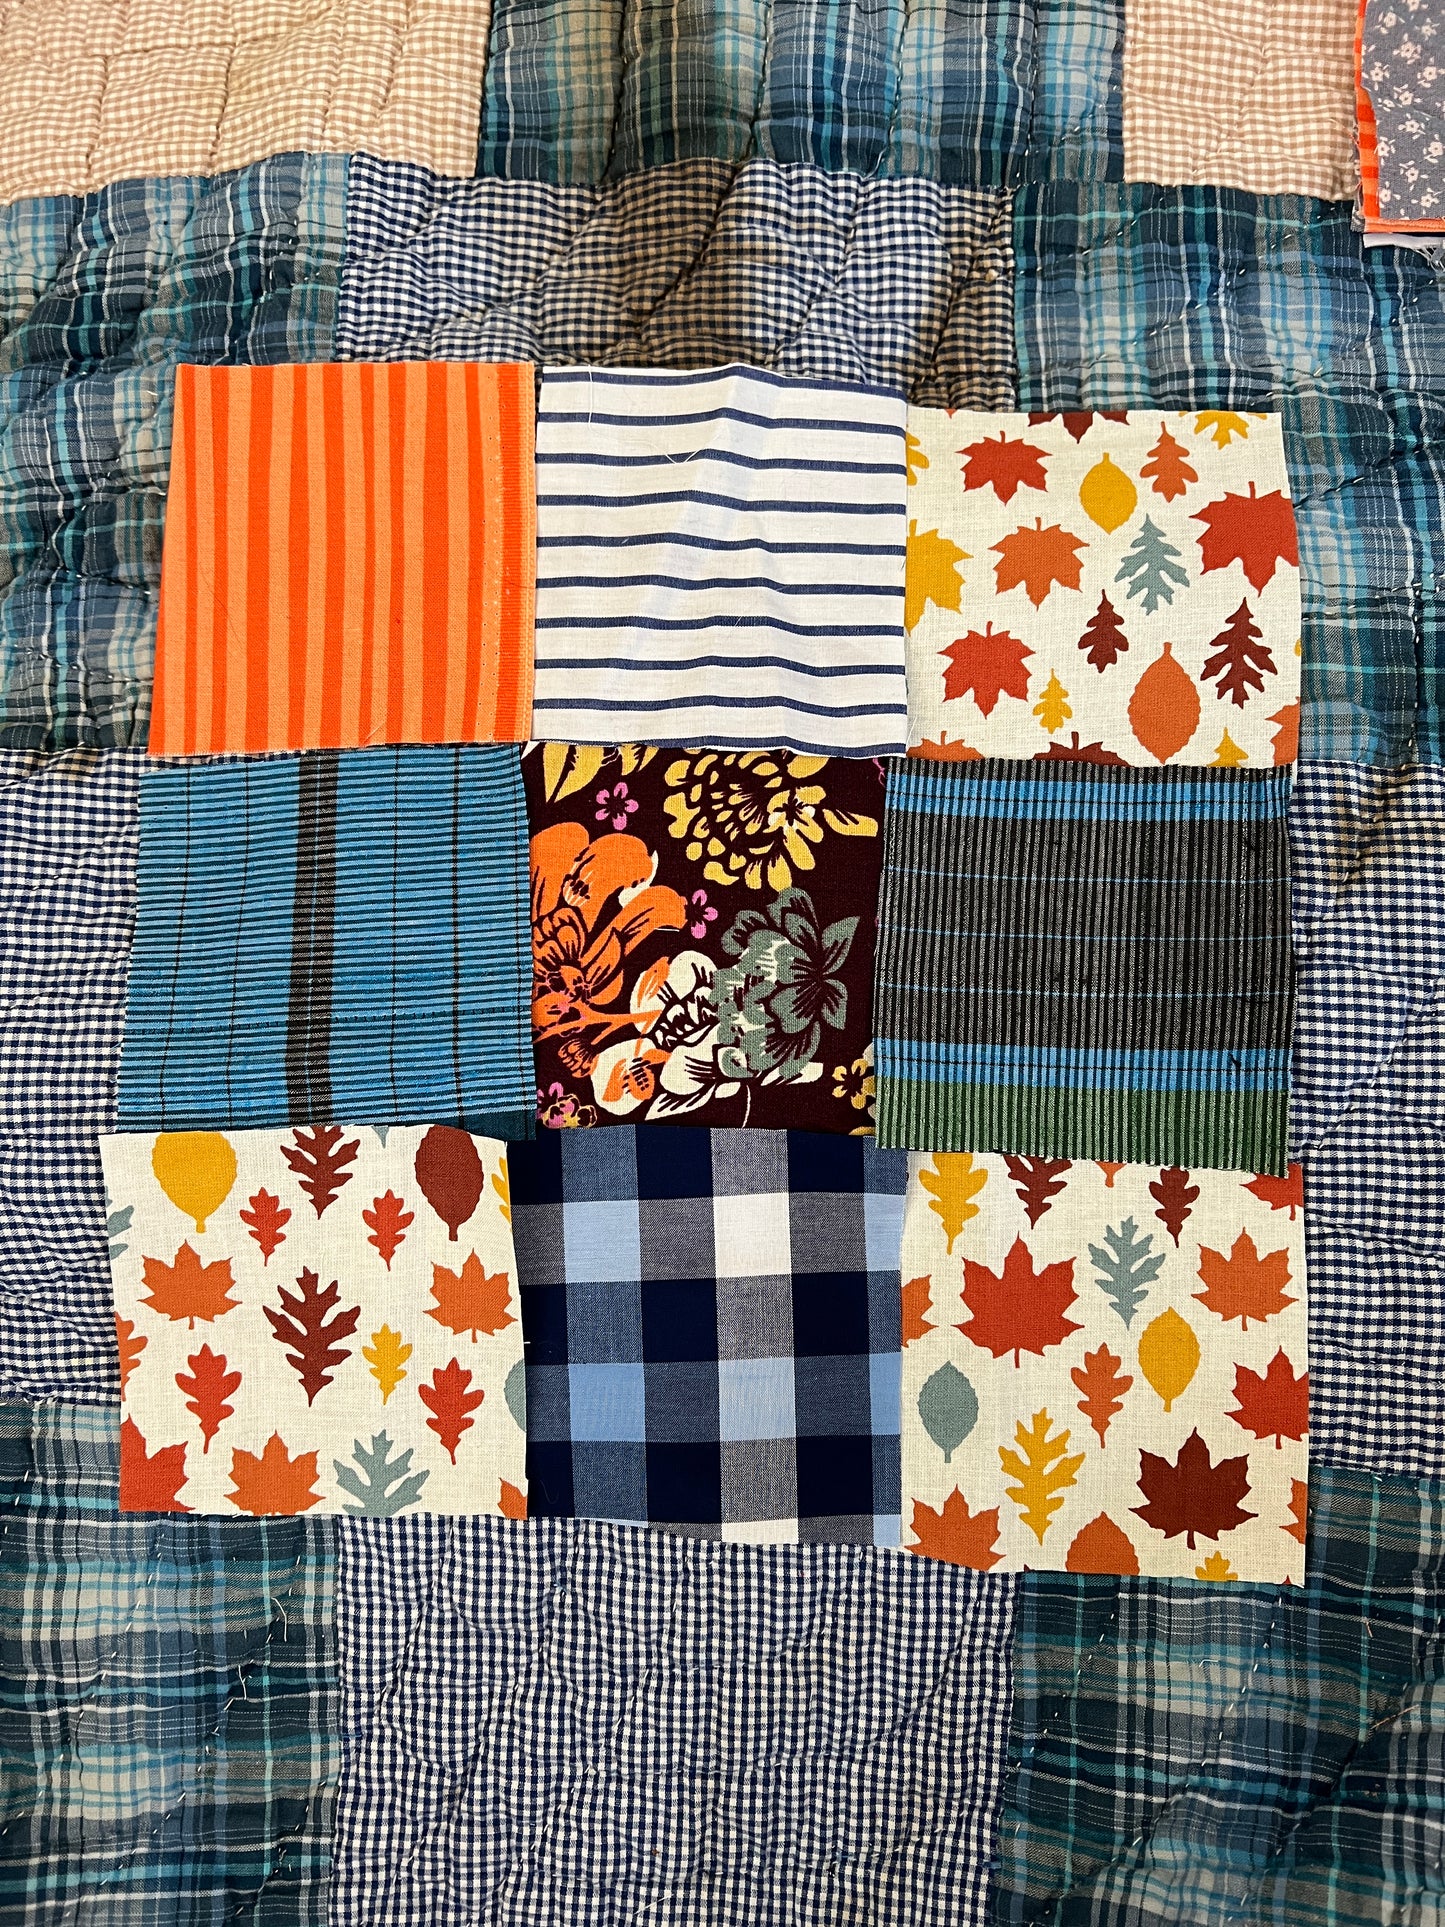 Vintage Quilt - Autumn Blues - Quilt Art - XLTwin Sized